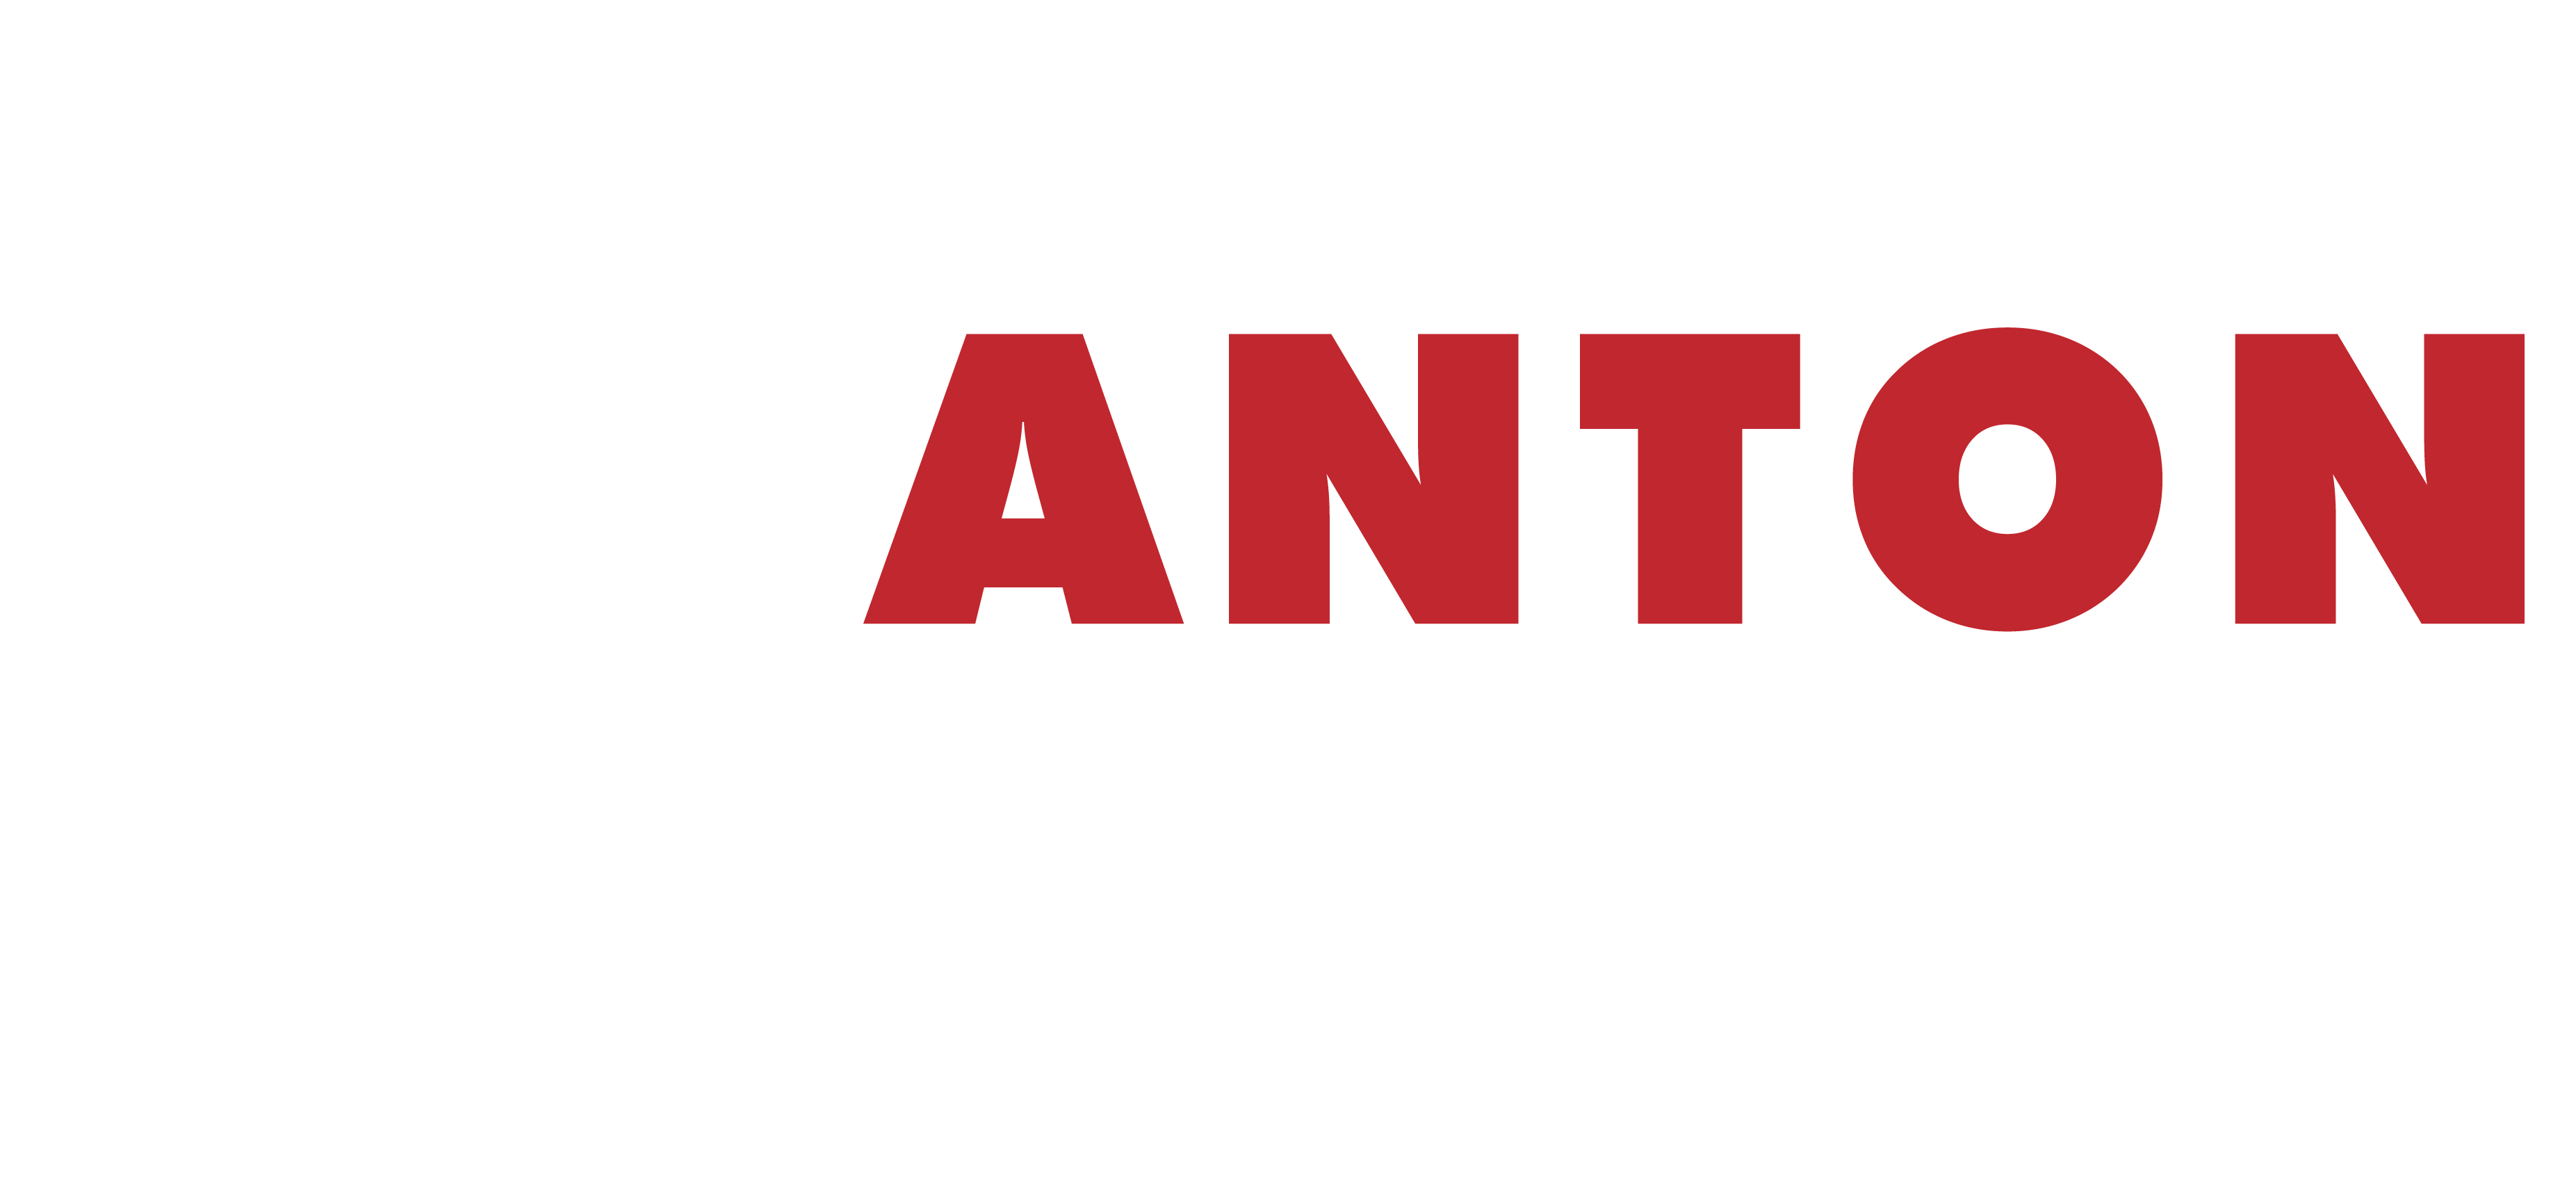 Anton De Kom bevrijdingsfestival wit 2